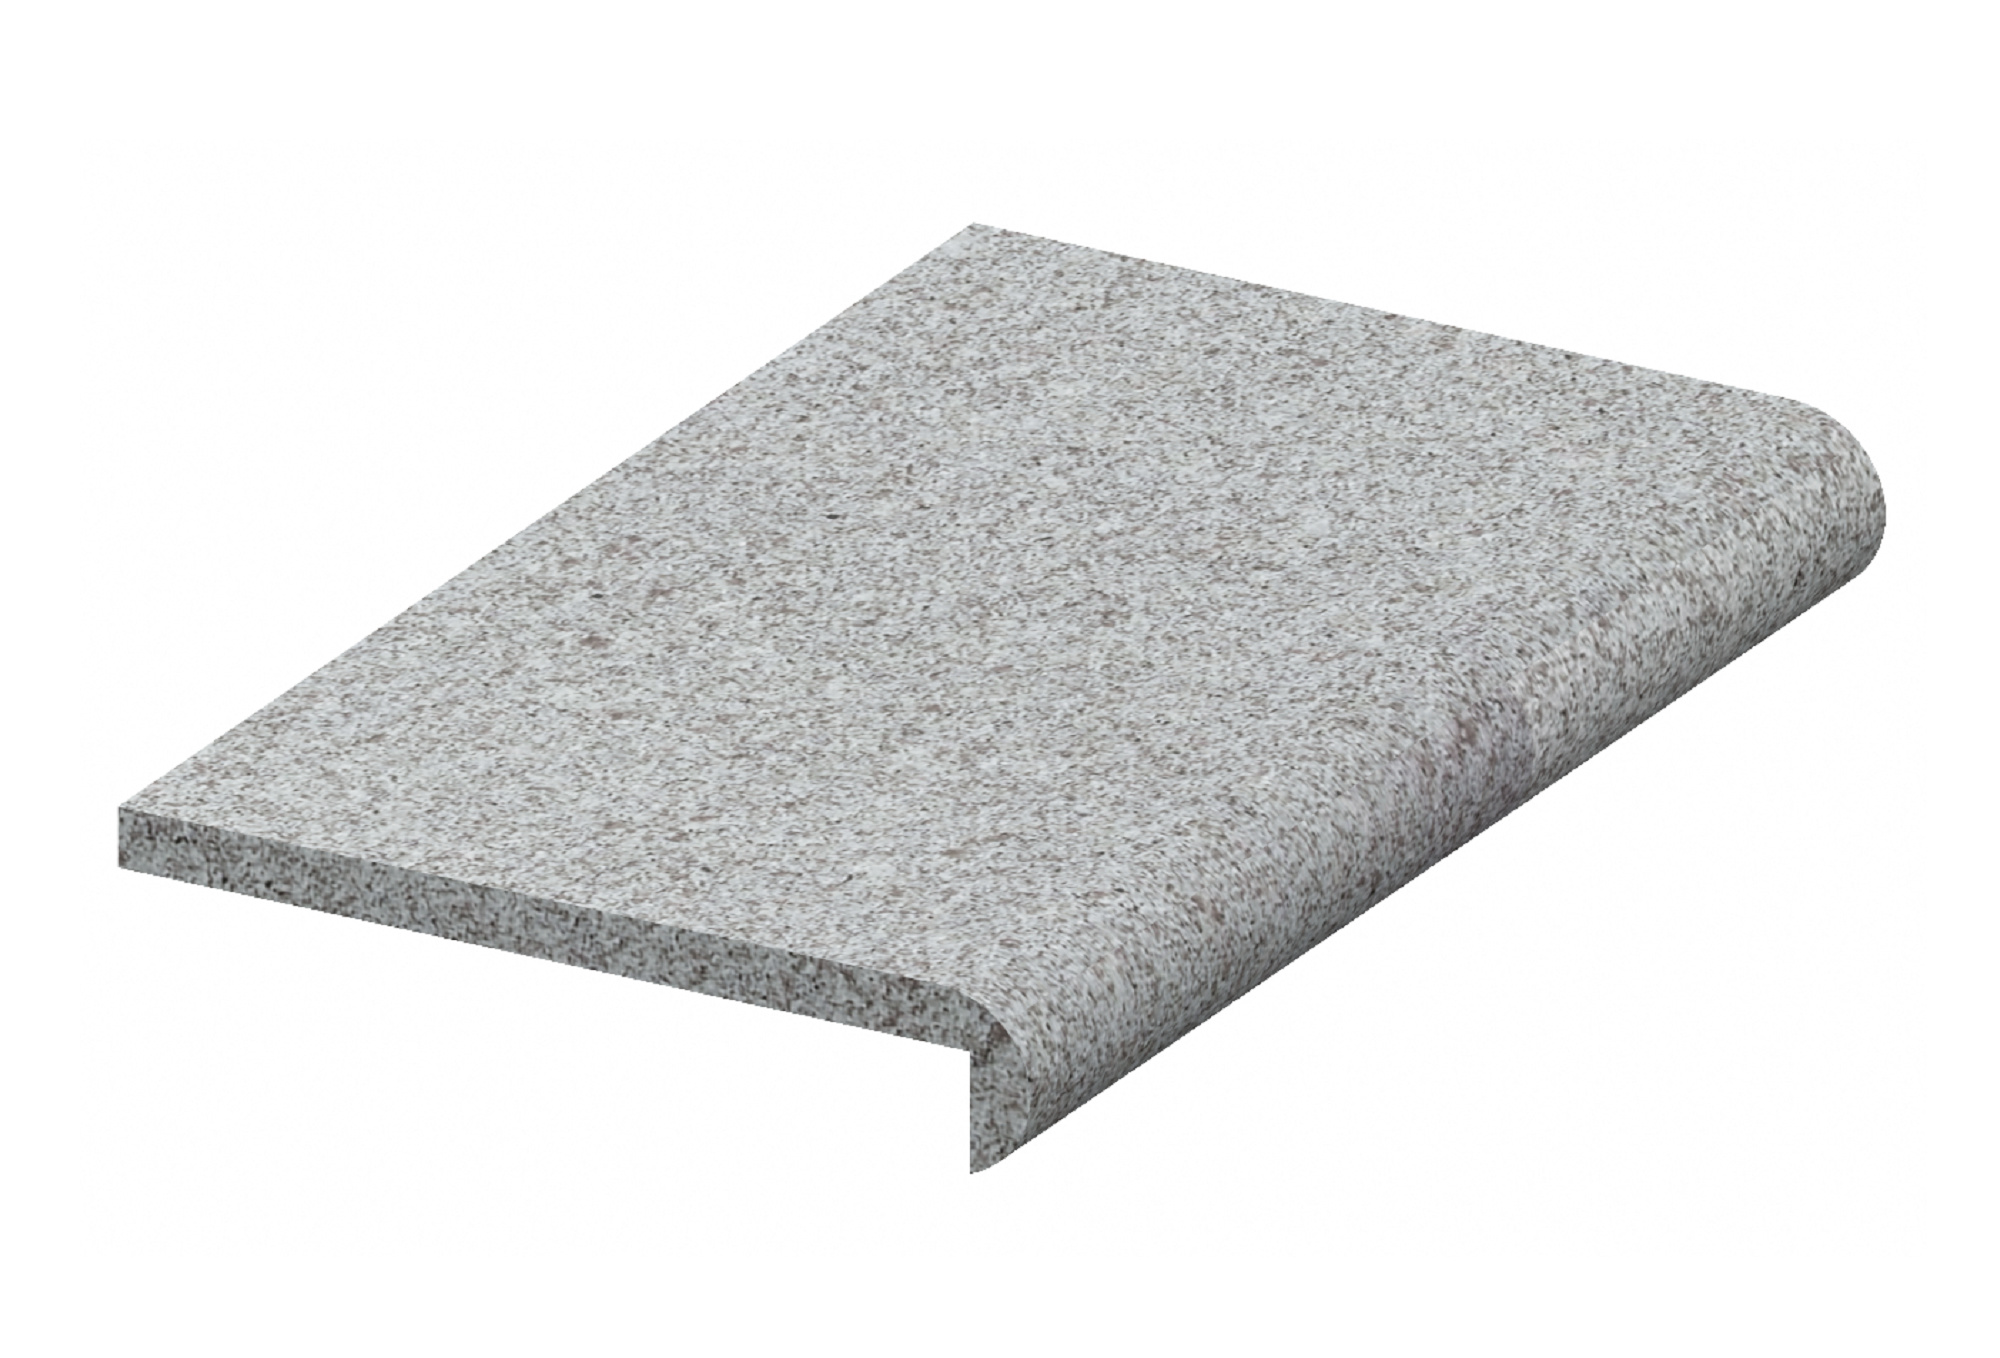 Granit beckenrandsteine – Mischungsverhältnis zement